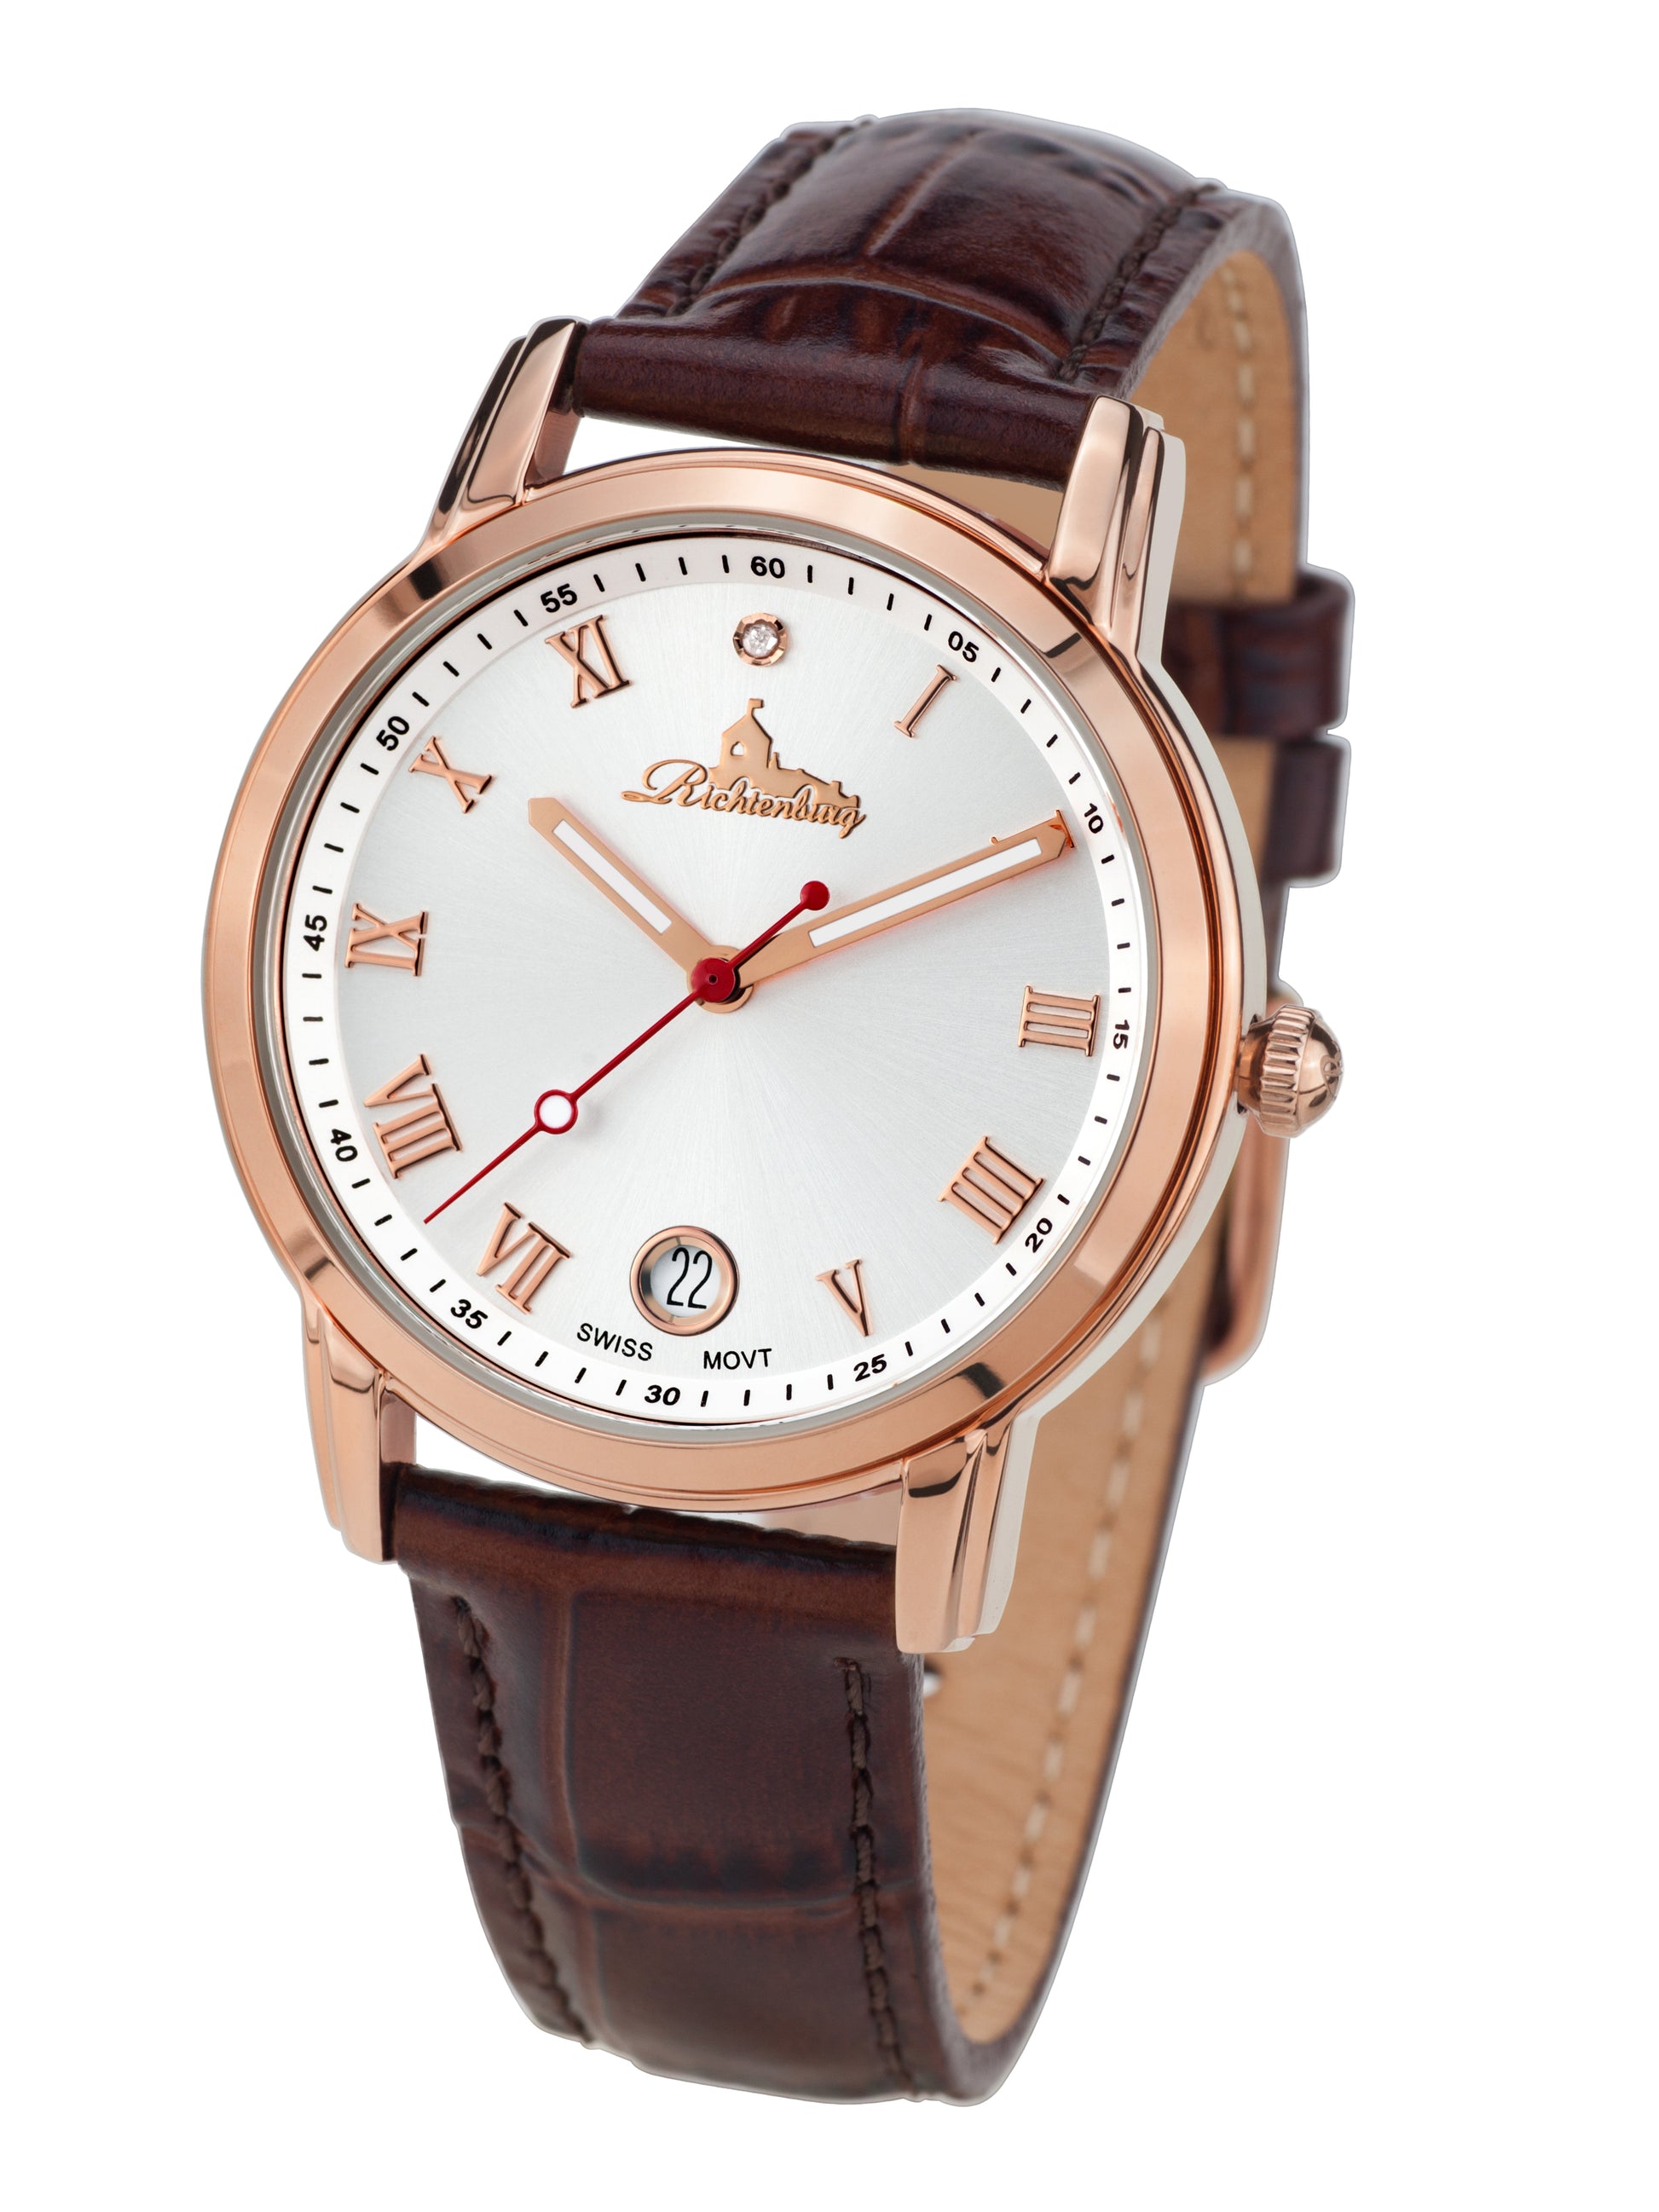 Automatic watches — Gesa — Richtenburg — rosegold IP silver